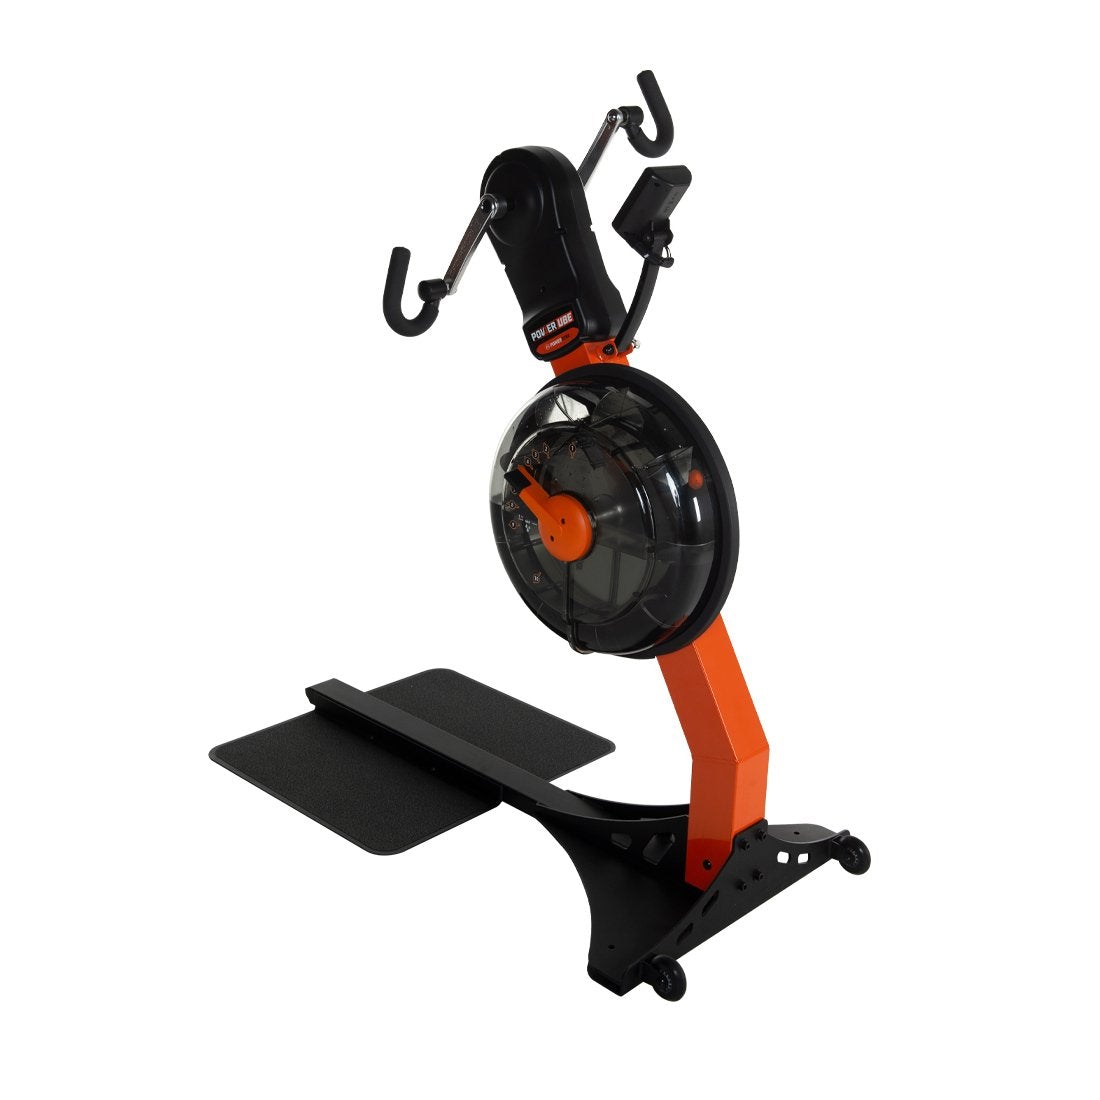 First Degree Fitness Fluid Power UBE Upper Body Ergometer in orange.